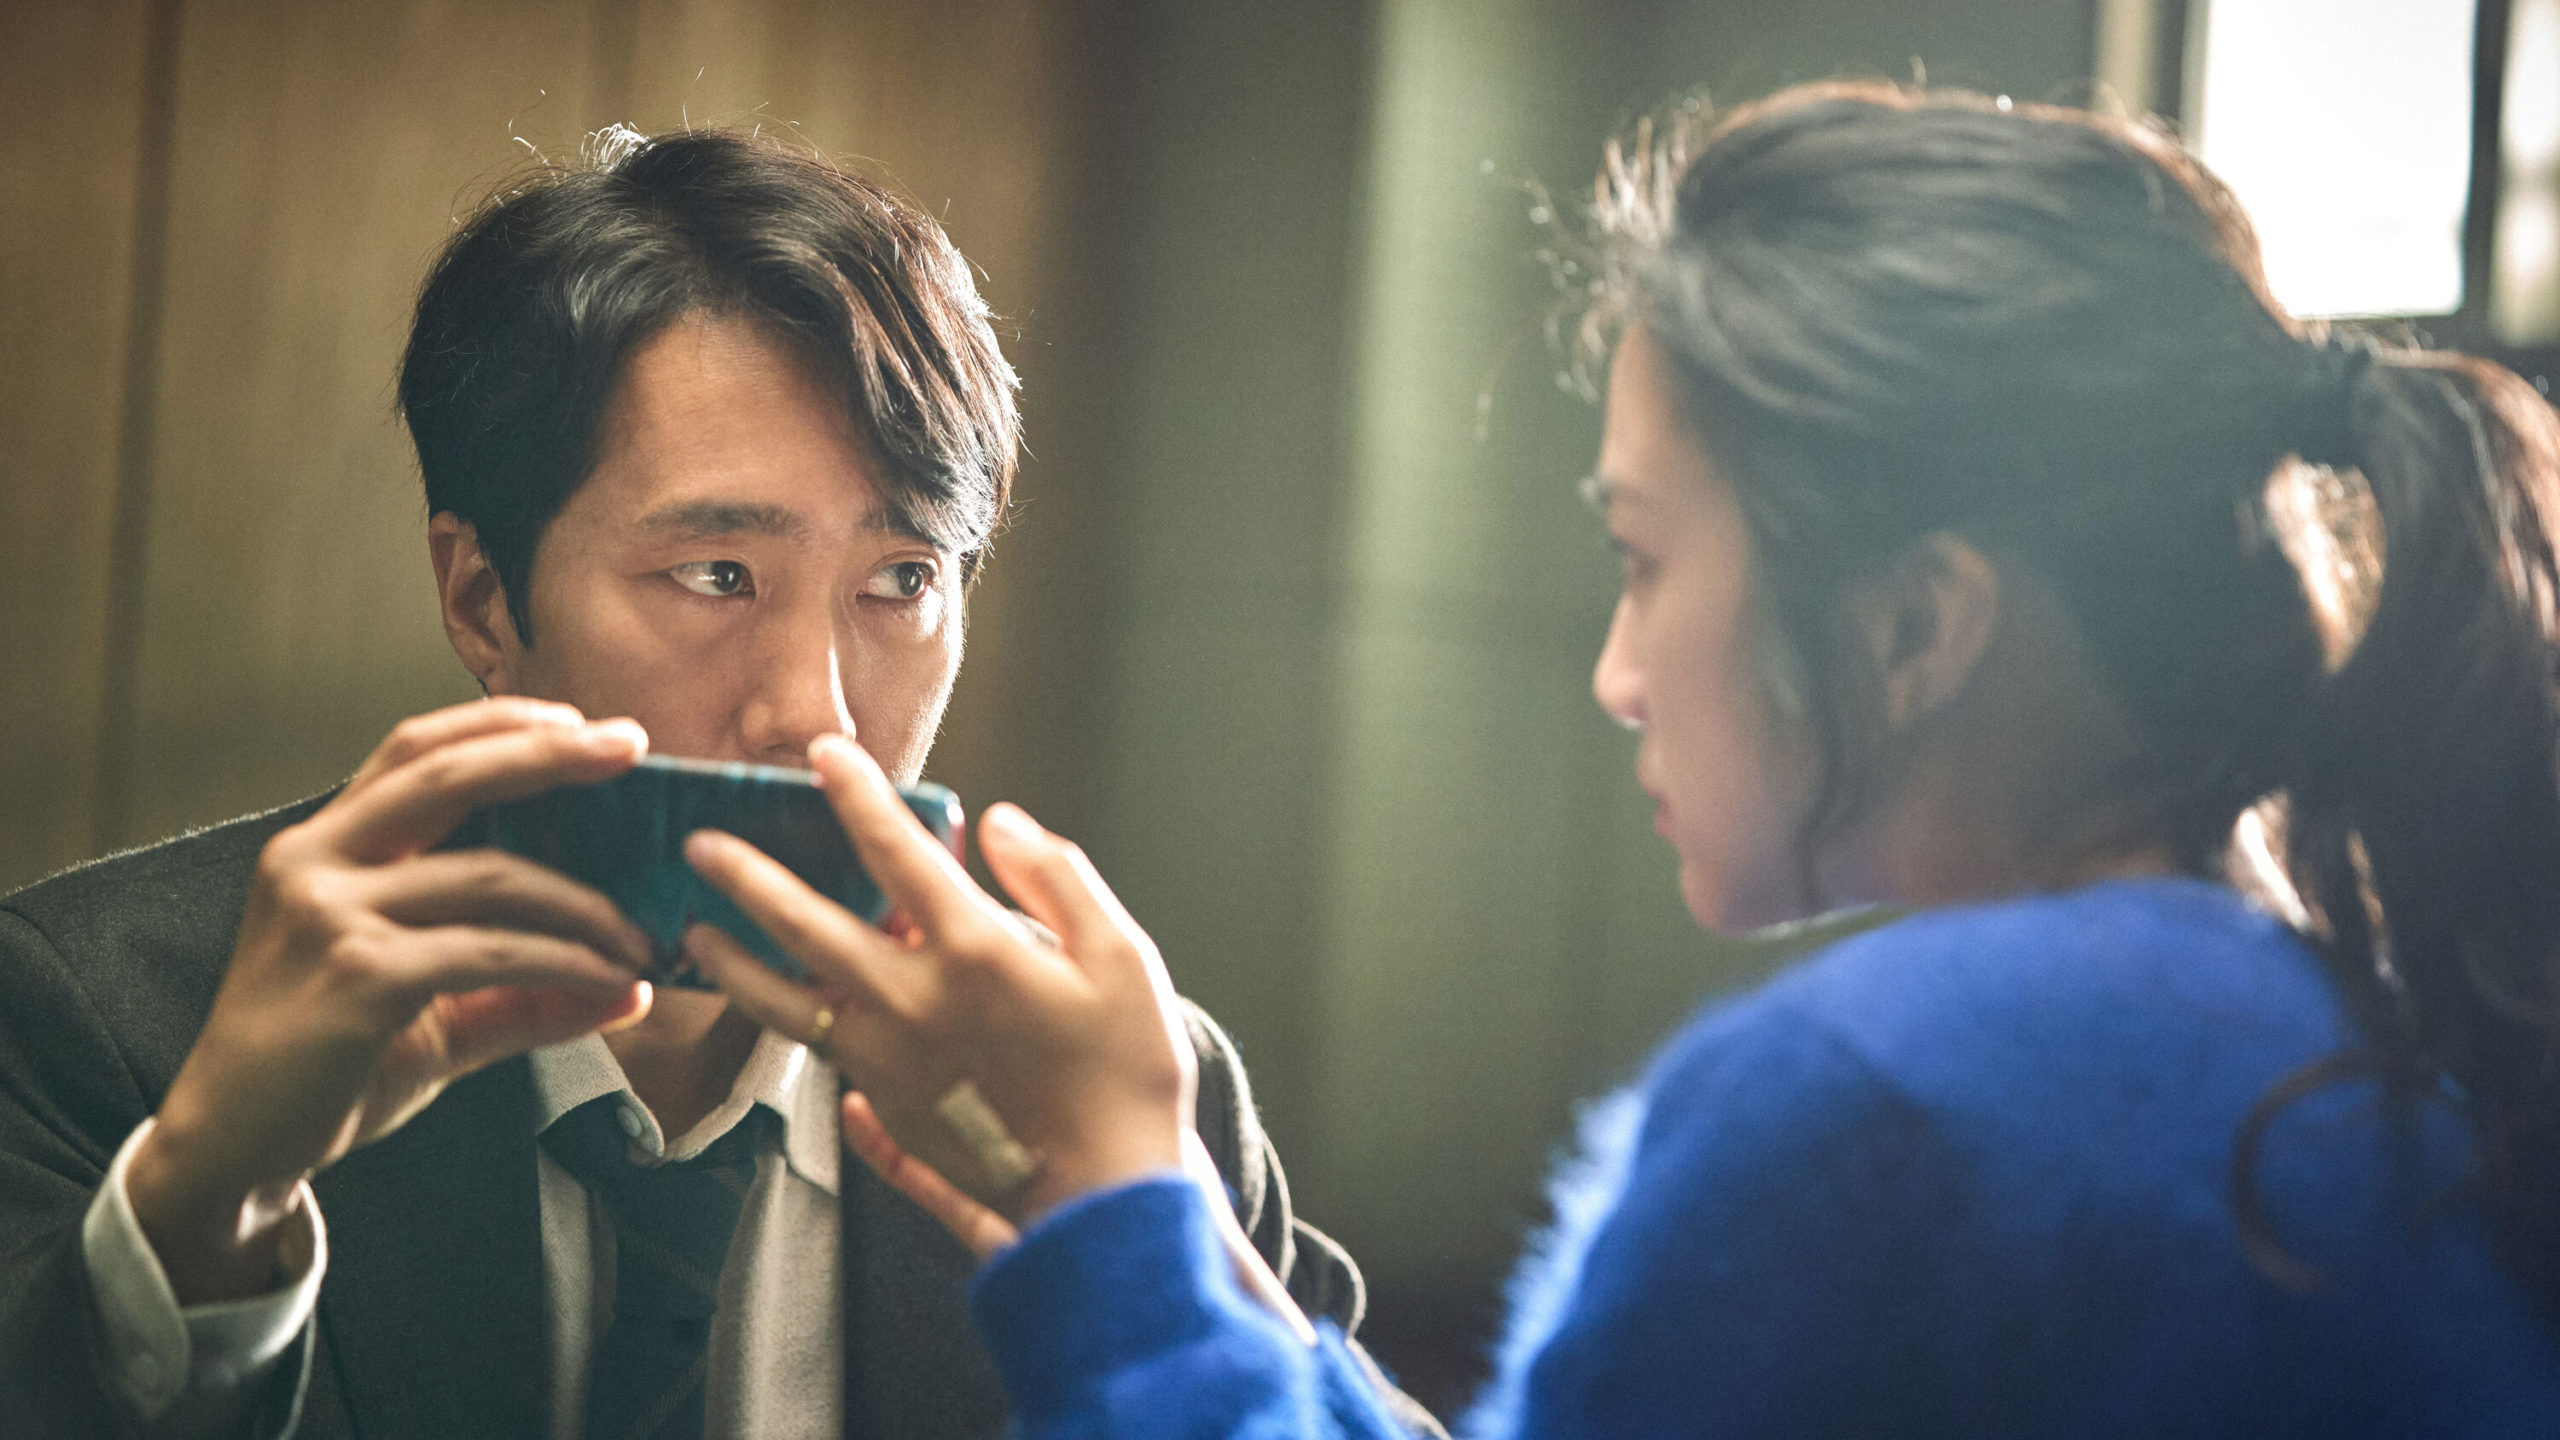 Decision to Leave: l'importanza del thriller psicologico di Park Chan-wook